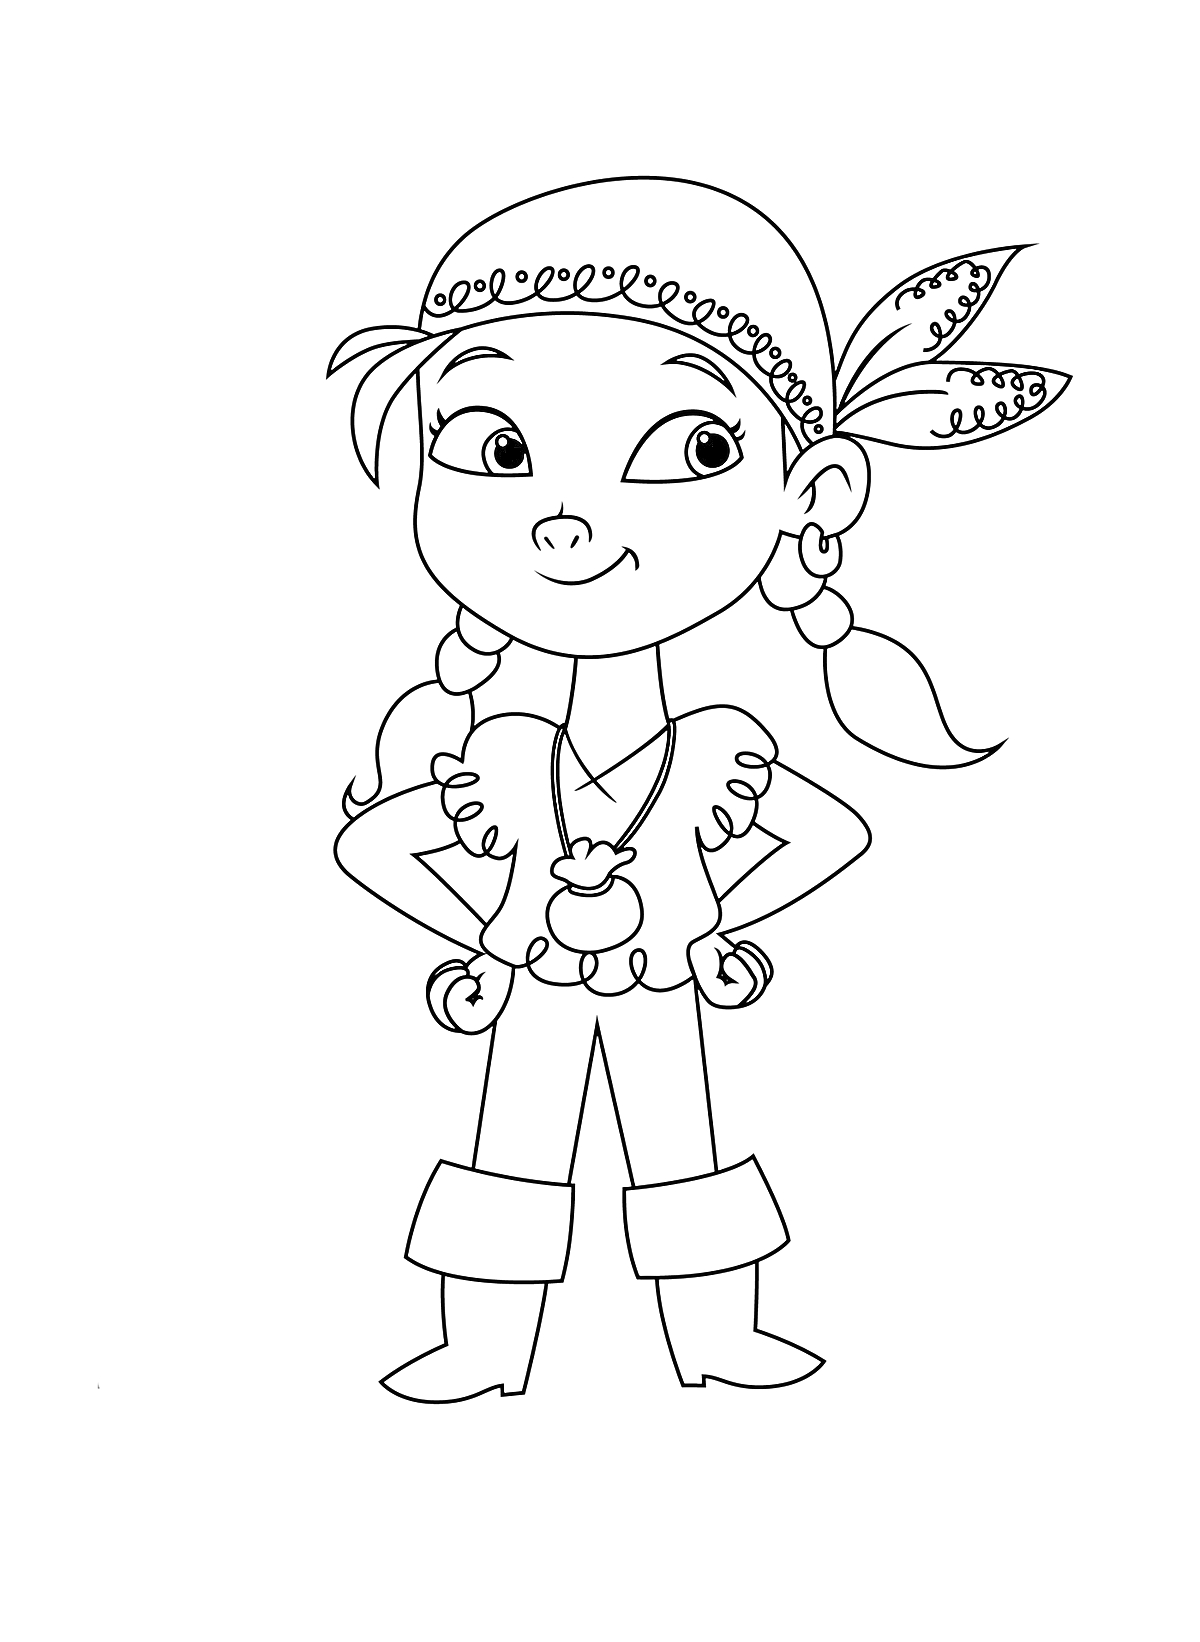 Раскраска Девочка-пиратка с платком на голове, кудрявыми волосами и серьгами